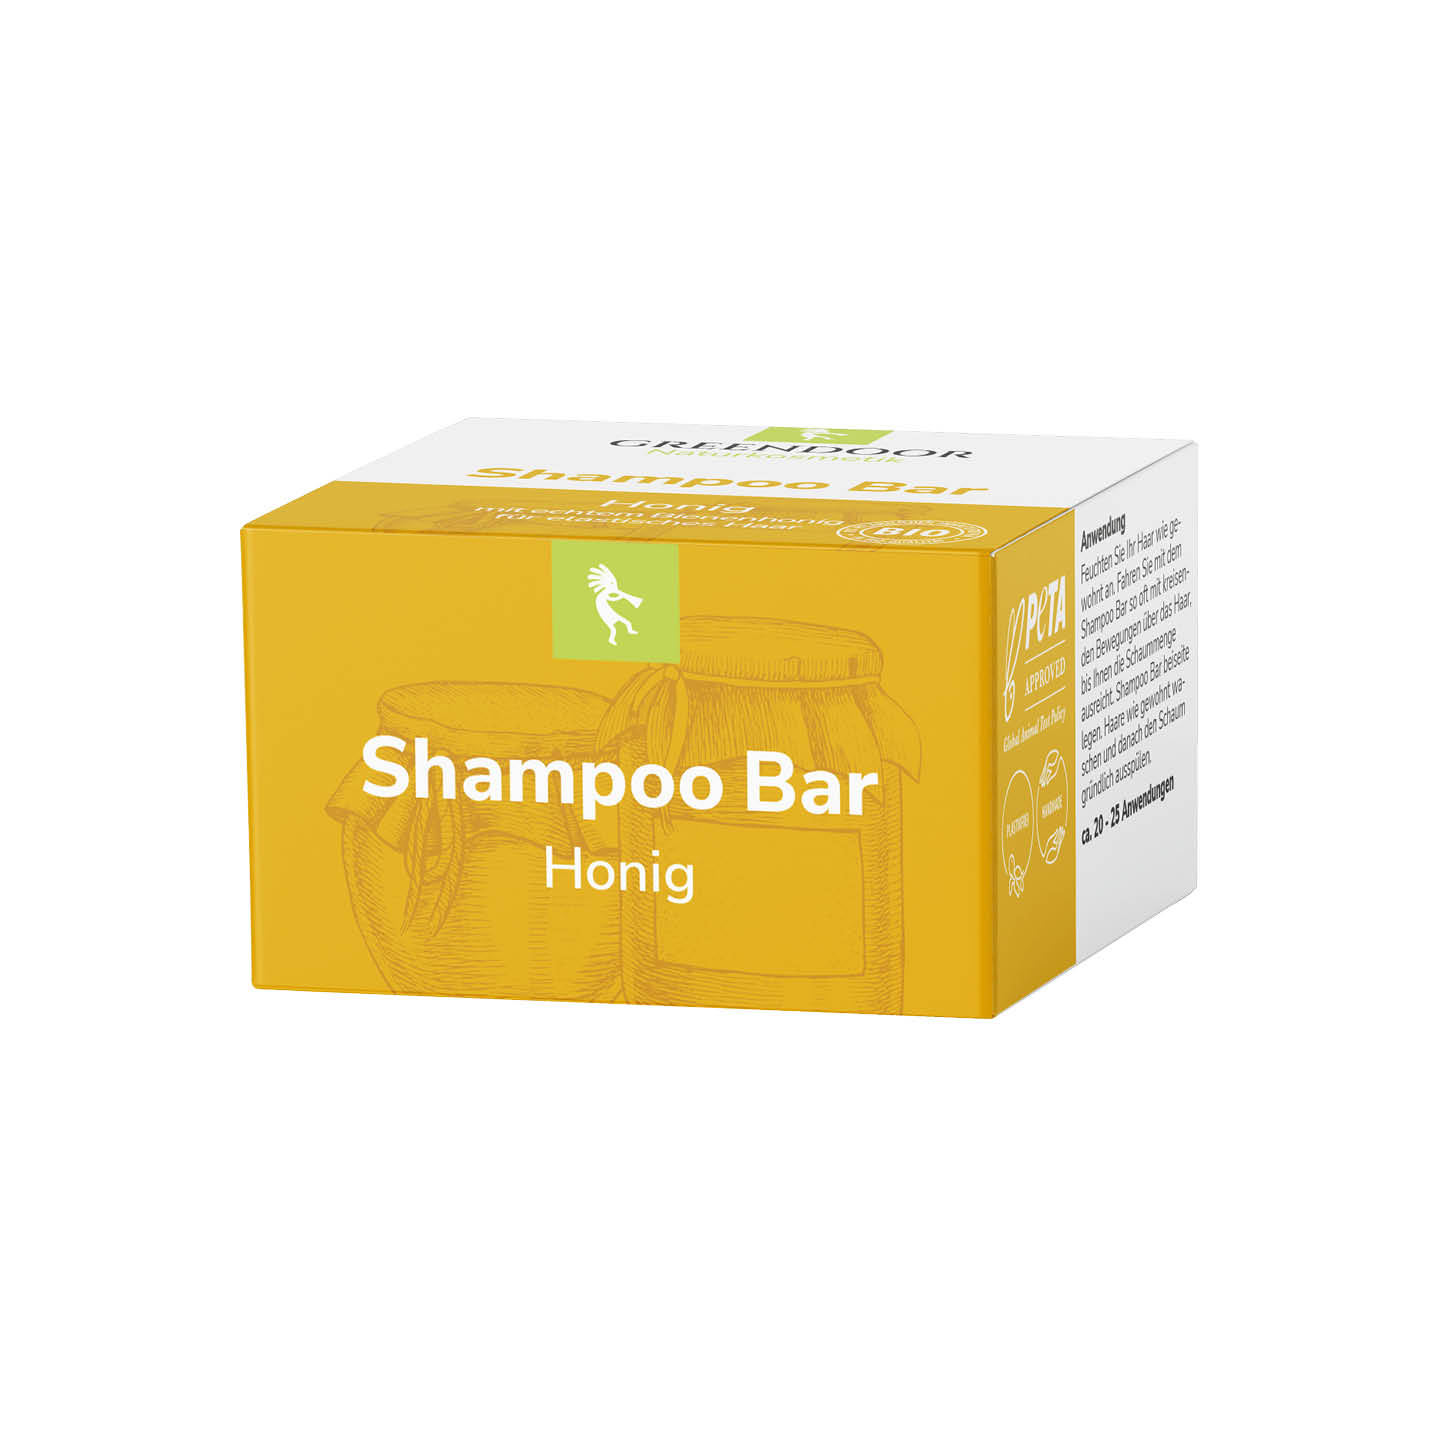 Shampoo Bar Honig solid Shampoo ohne Sulfate, mit echtem Bienenhonig, 75g